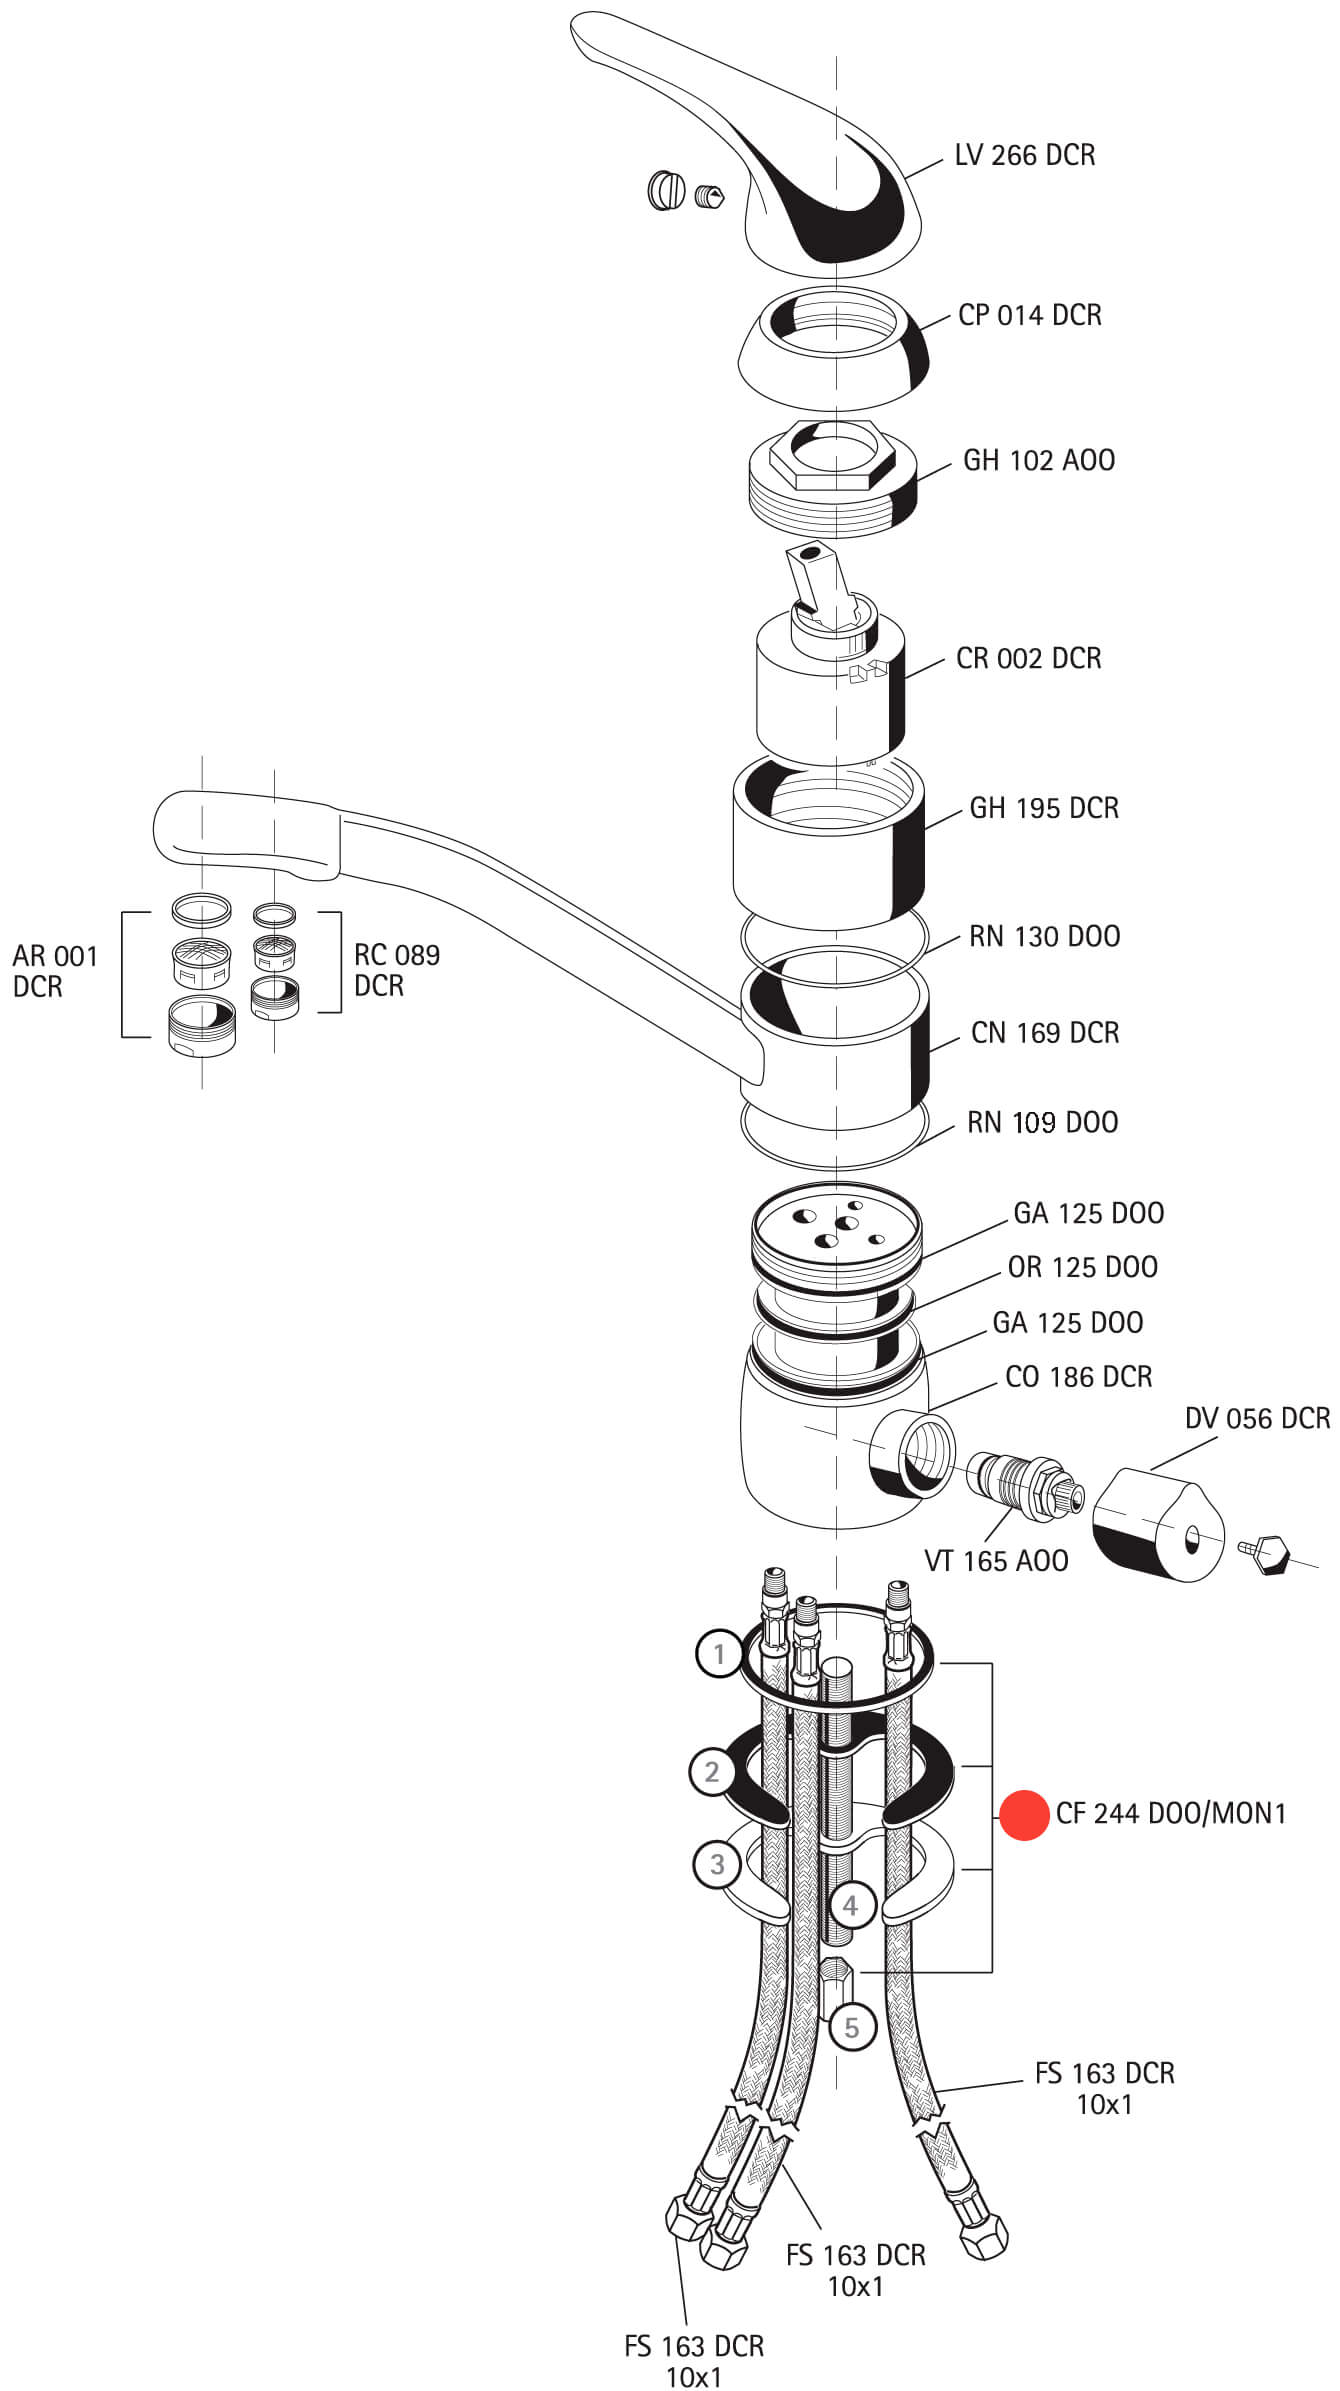 Pièce détachée - Ensemble fixation robinet dauphin - CF 244 D00/MON1 -  Waterconcept - 006499